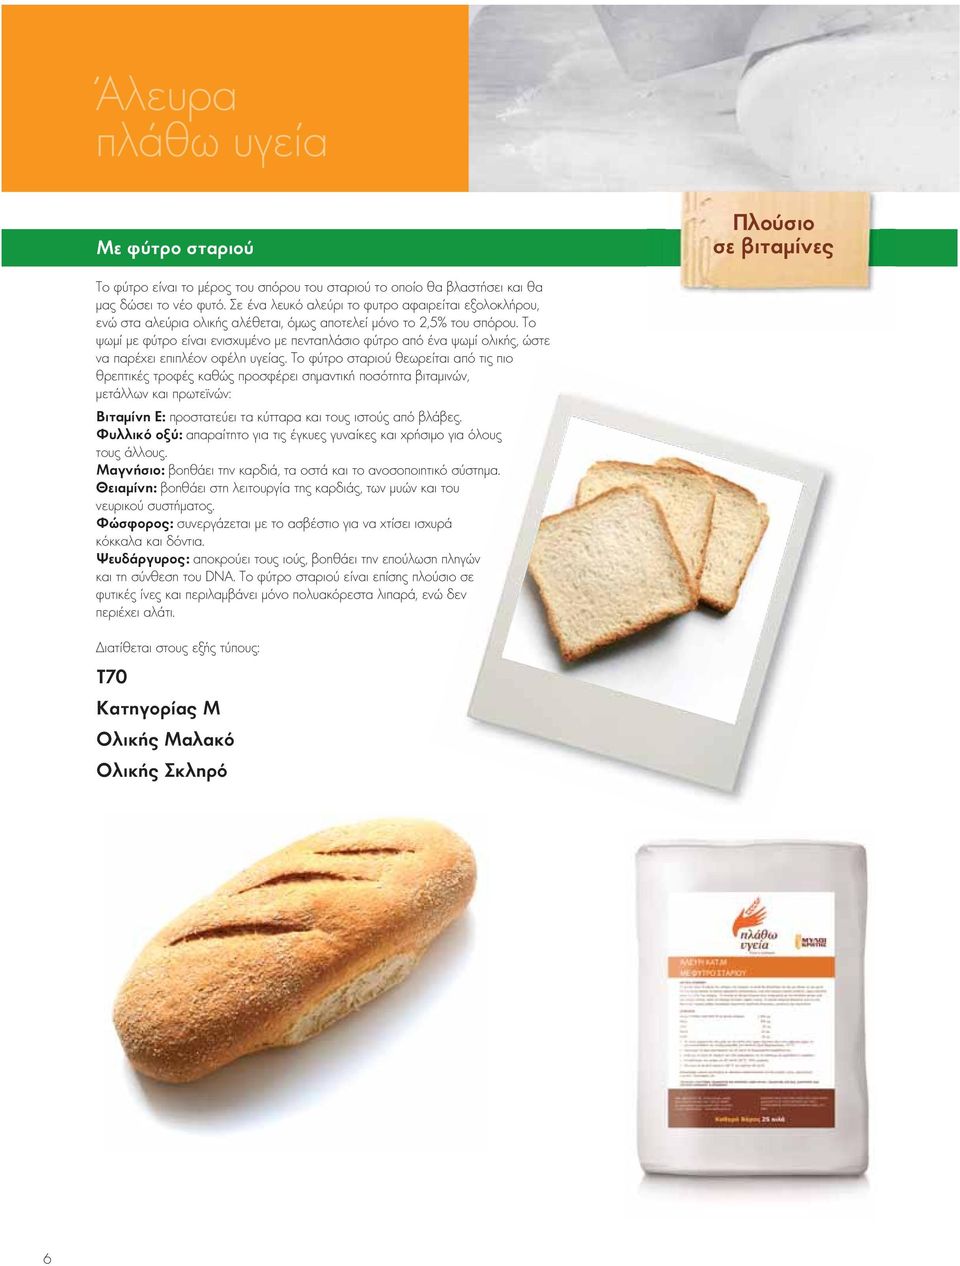 Το ψωμί με φύτρο είναι ενισχυμένο με πενταπλάσιο φύτρο από ένα ψωμί ολικής, ώστε να παρέχει επιπλέον οφέλη υγείας.